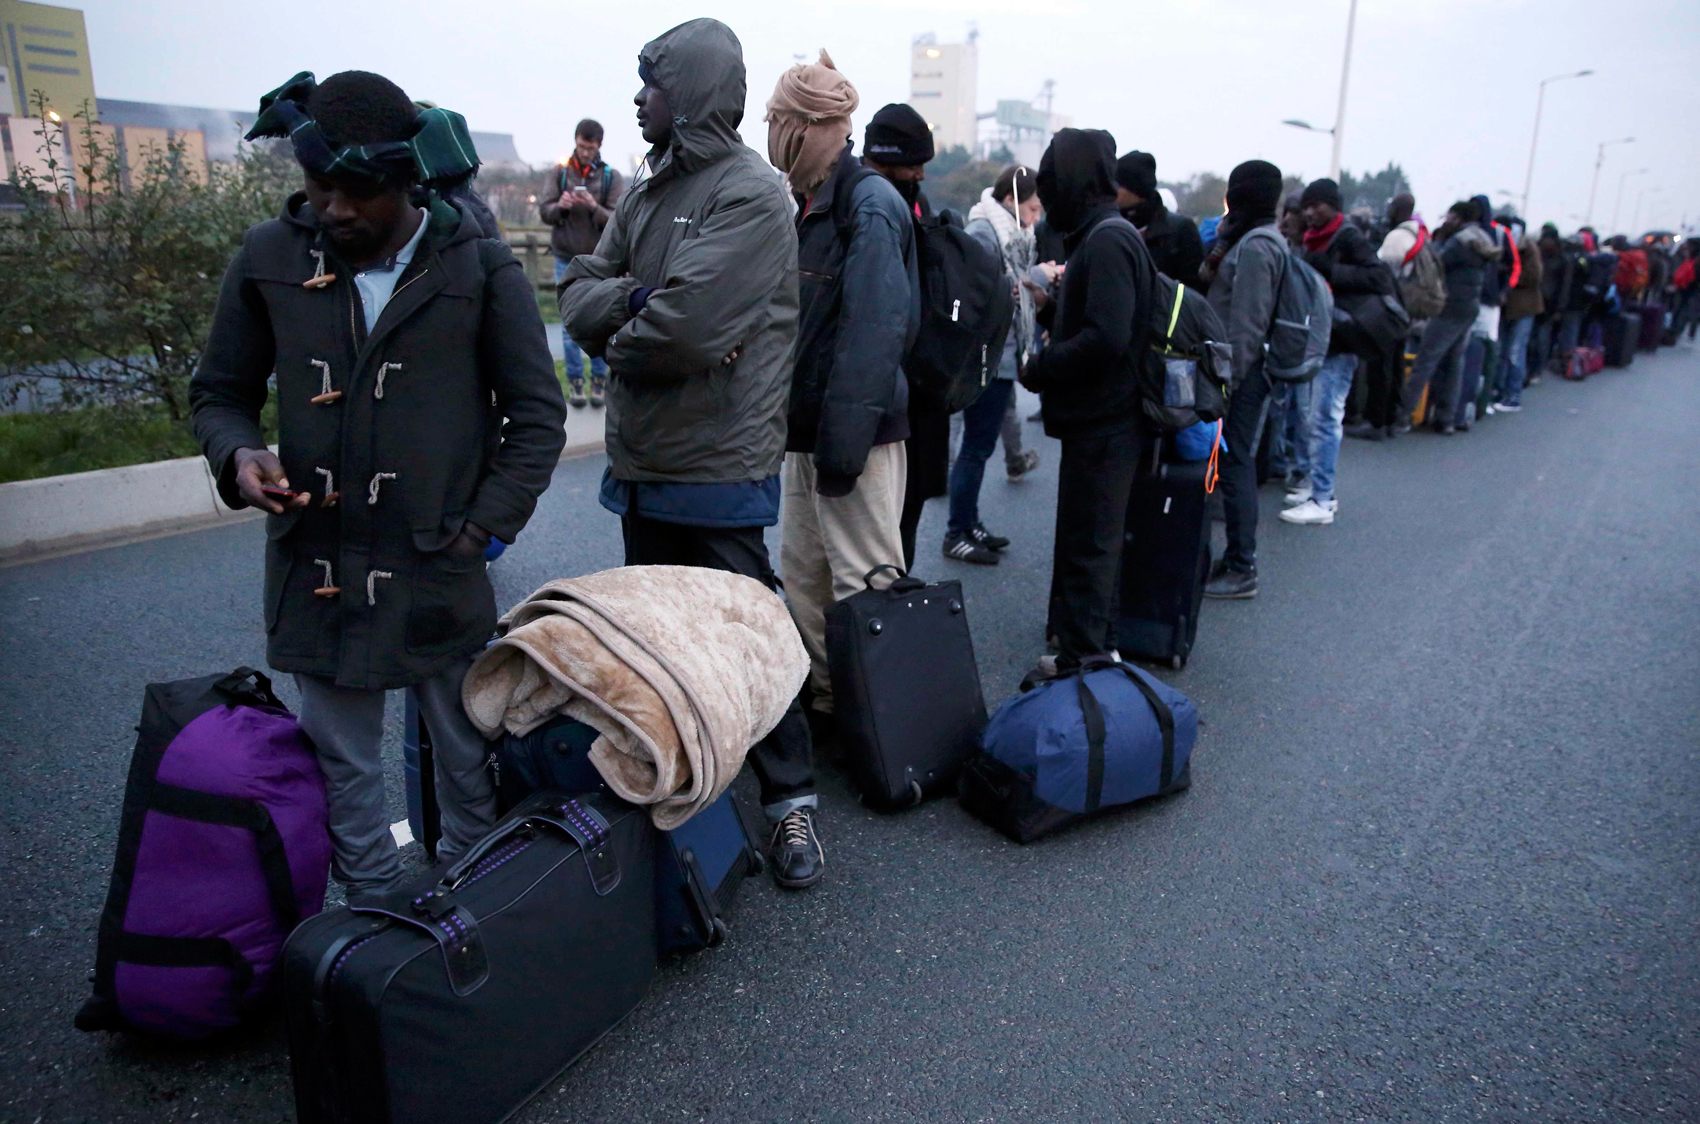 Migrantes fazem fila nesta segunda-feira (24) para aguardar a transferência do acampamento de Calais, no norte da França, para centros de acolhida espalhados pelo país (Foto: Neil Hall/ Reuters)